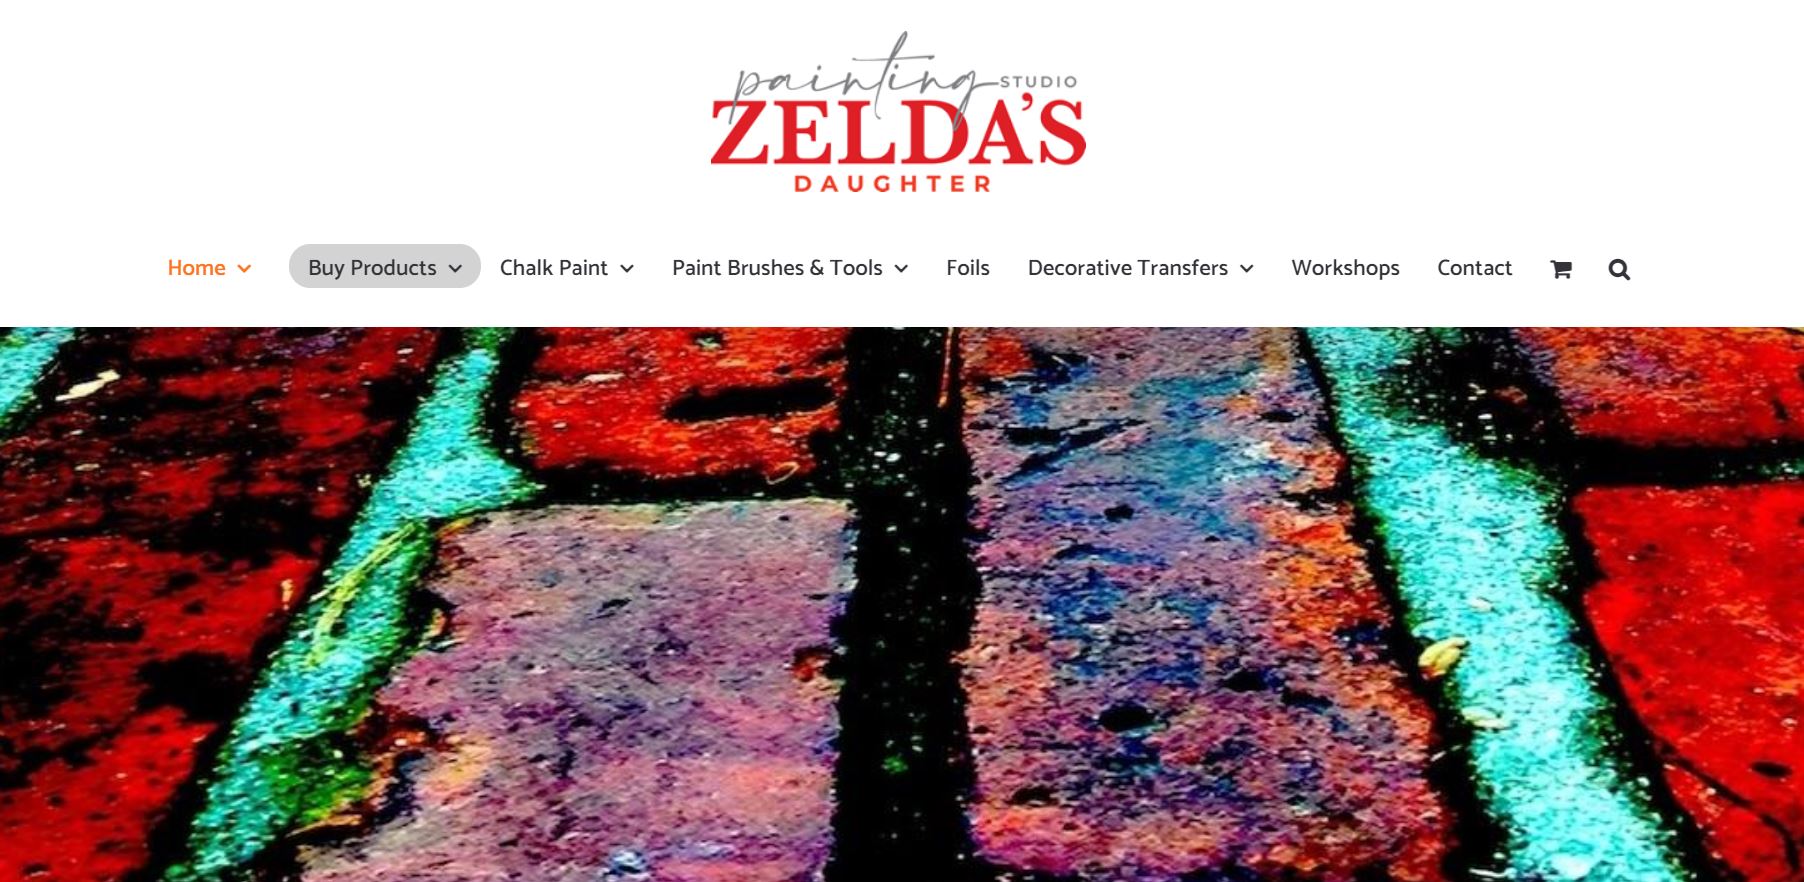 Zeldas daughter Chalk Paints